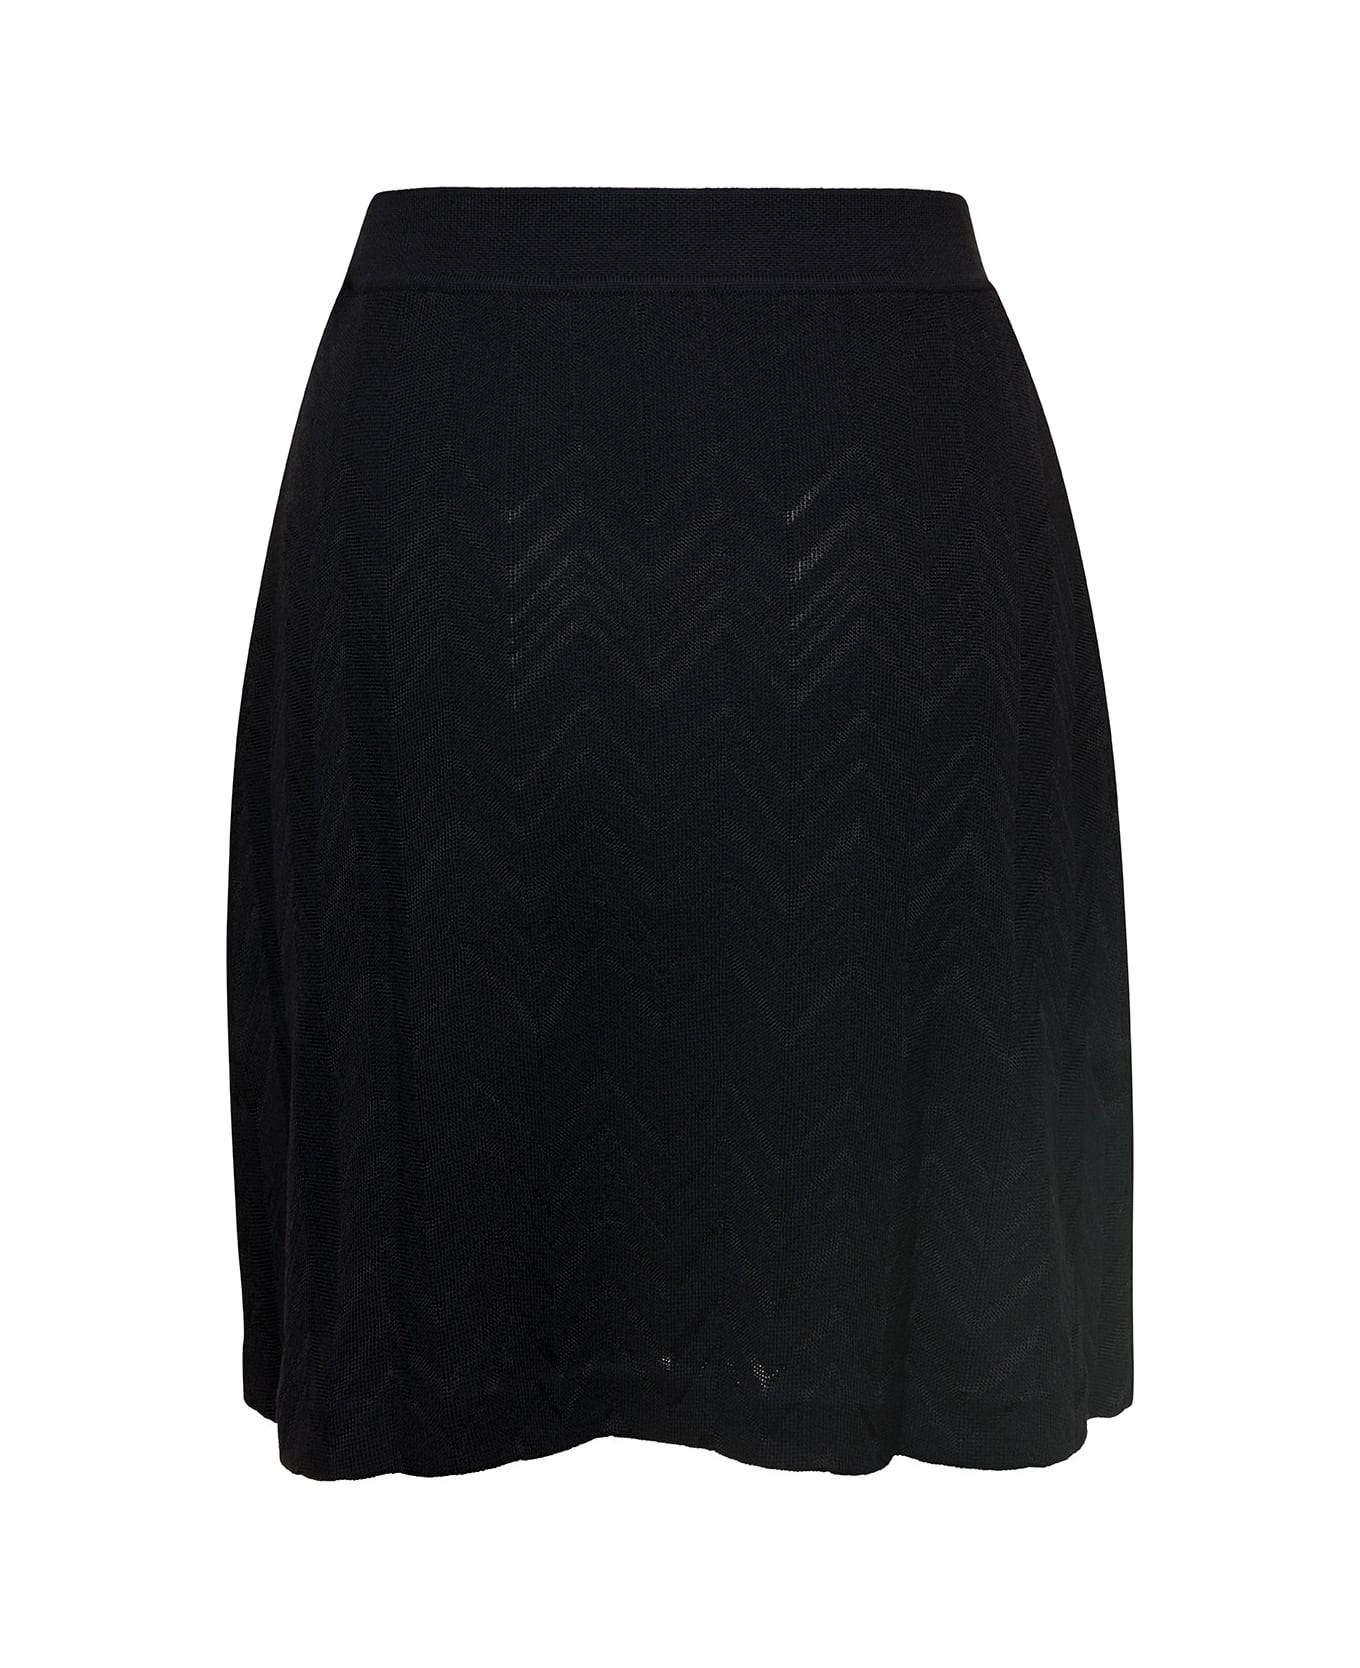 Missoni Wool Viscose Solid Colored Chevron Mini Skirt - Nero